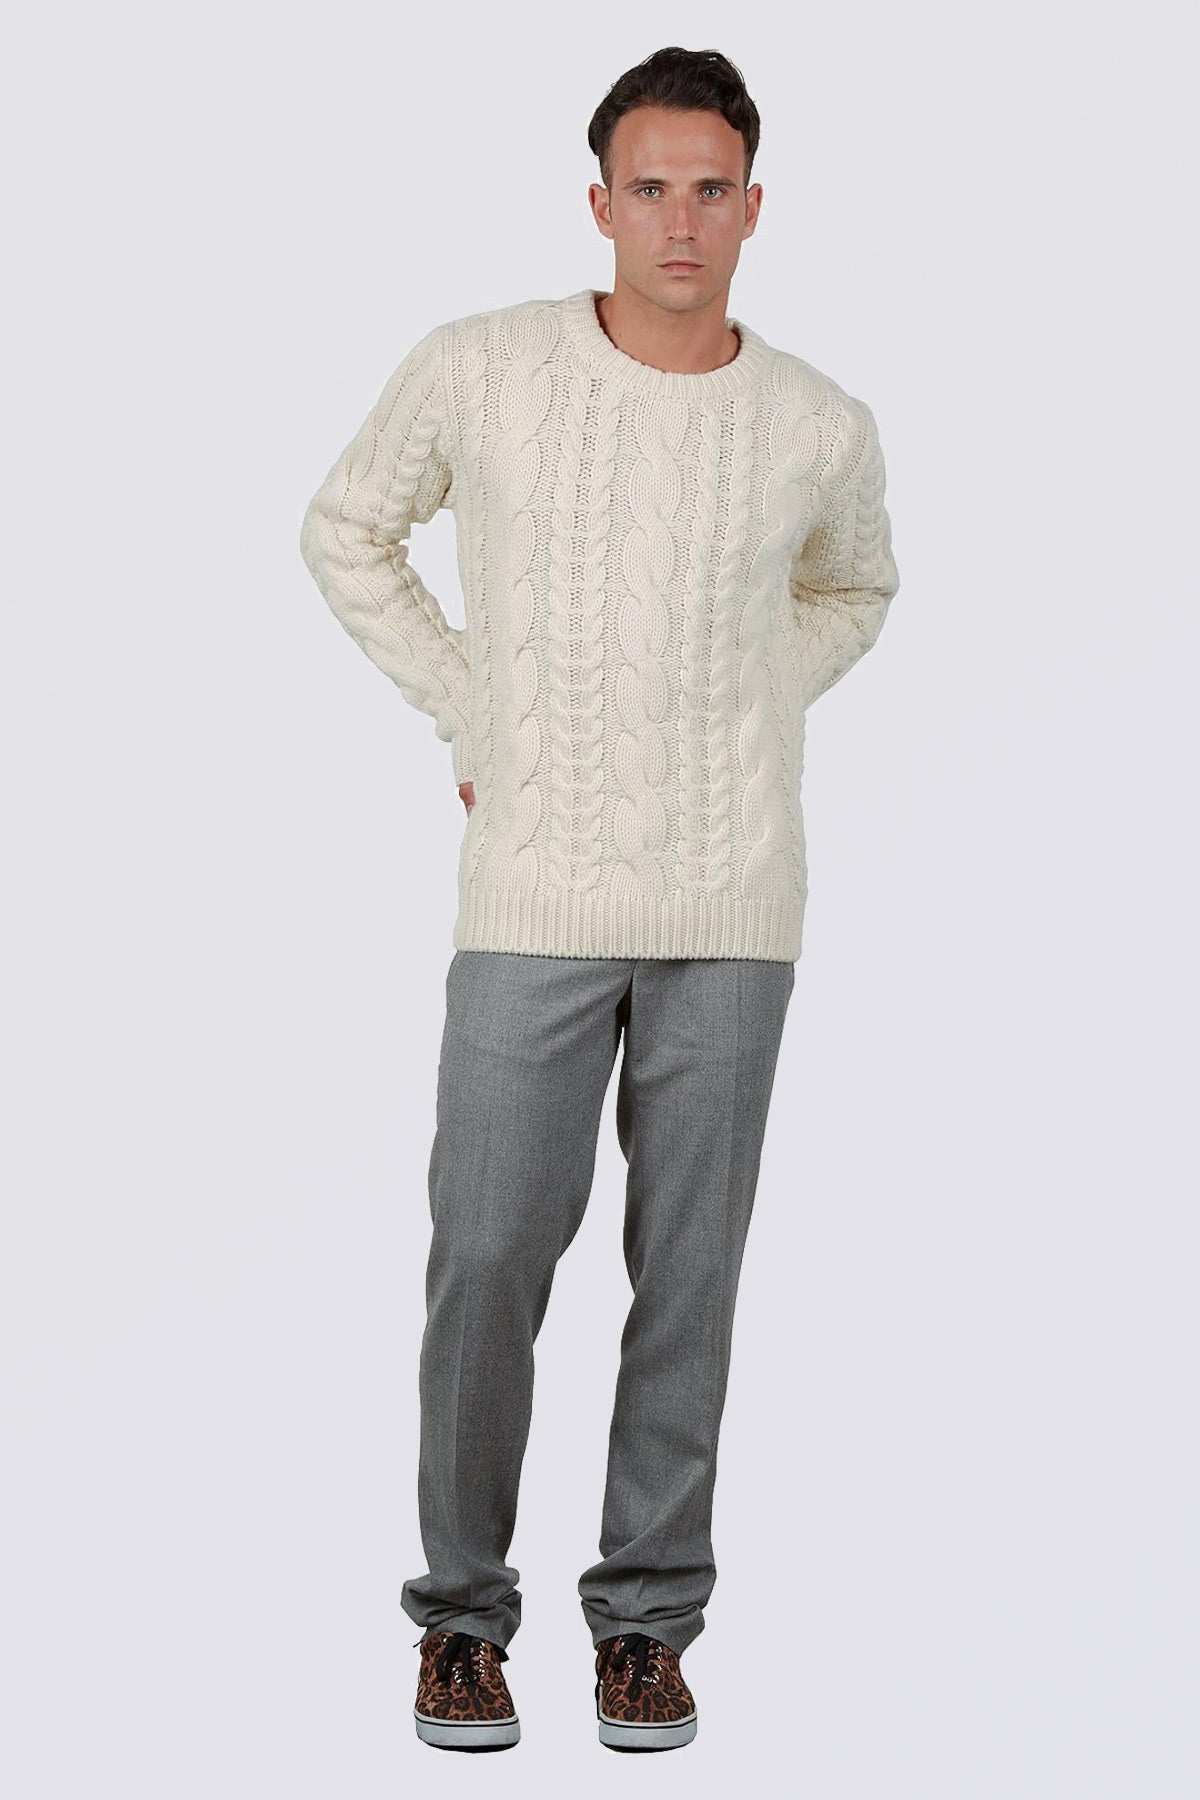 Pullover mit Rundhalsausschnitt – Herren, Herbst/Winter – Wolle und Kaschmir – 100 % Made in Italy | Brunella Gori